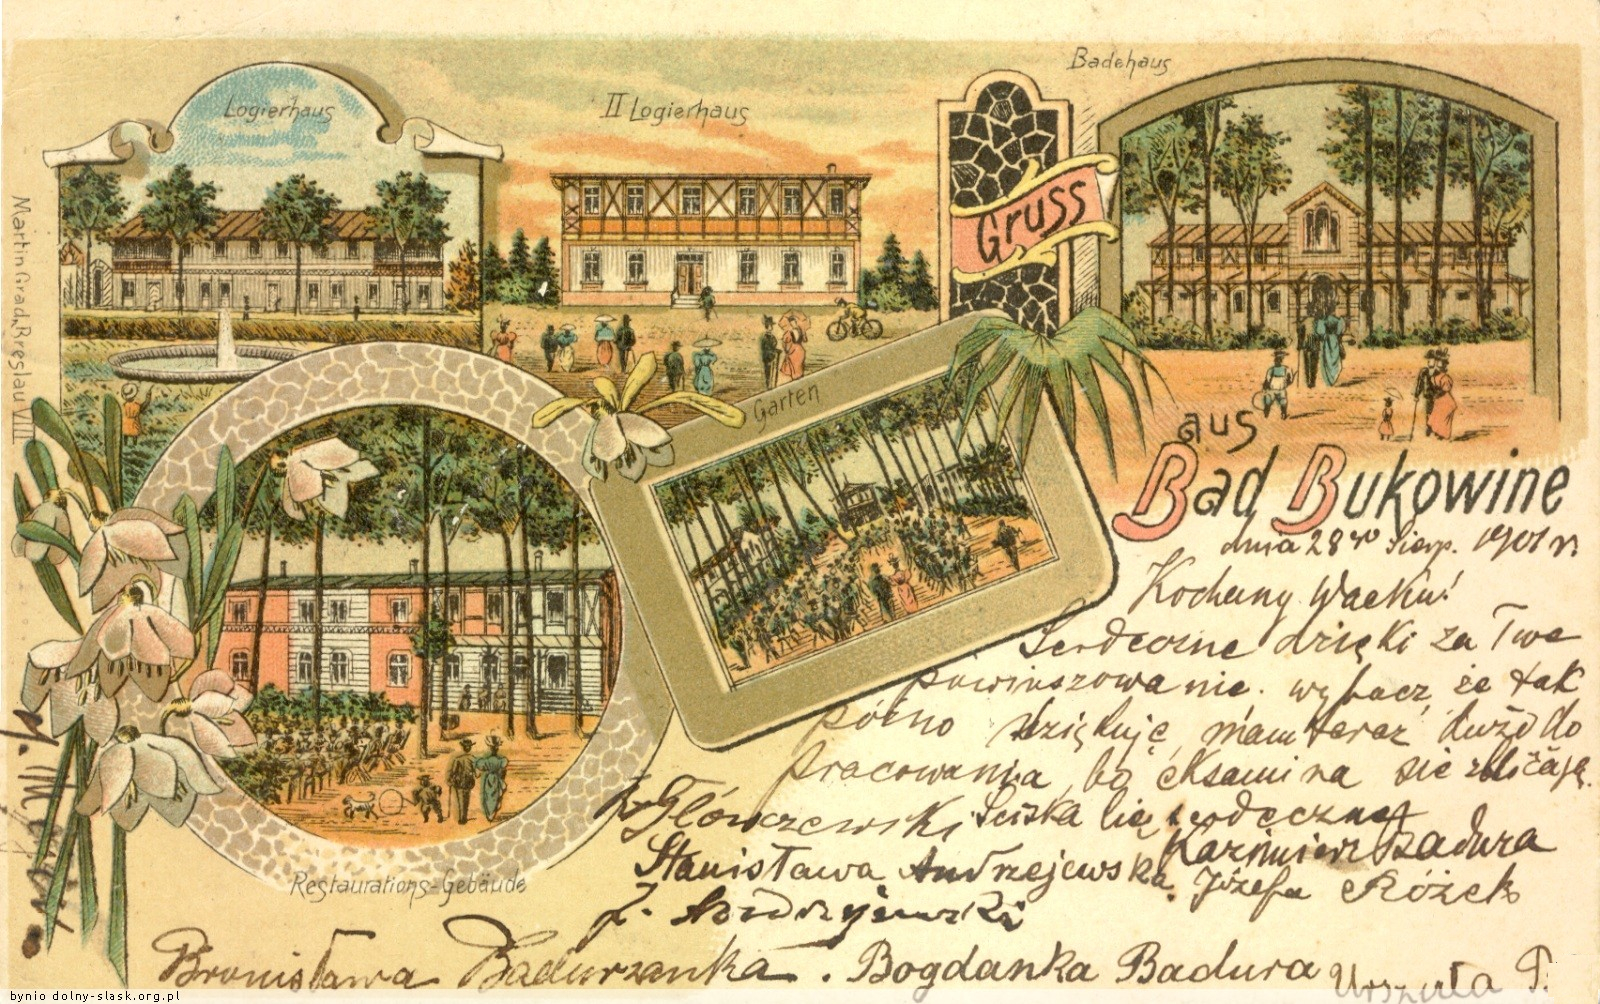 Pocztówka przedstawiająca budynki kompleksu uzdrowiskowego.